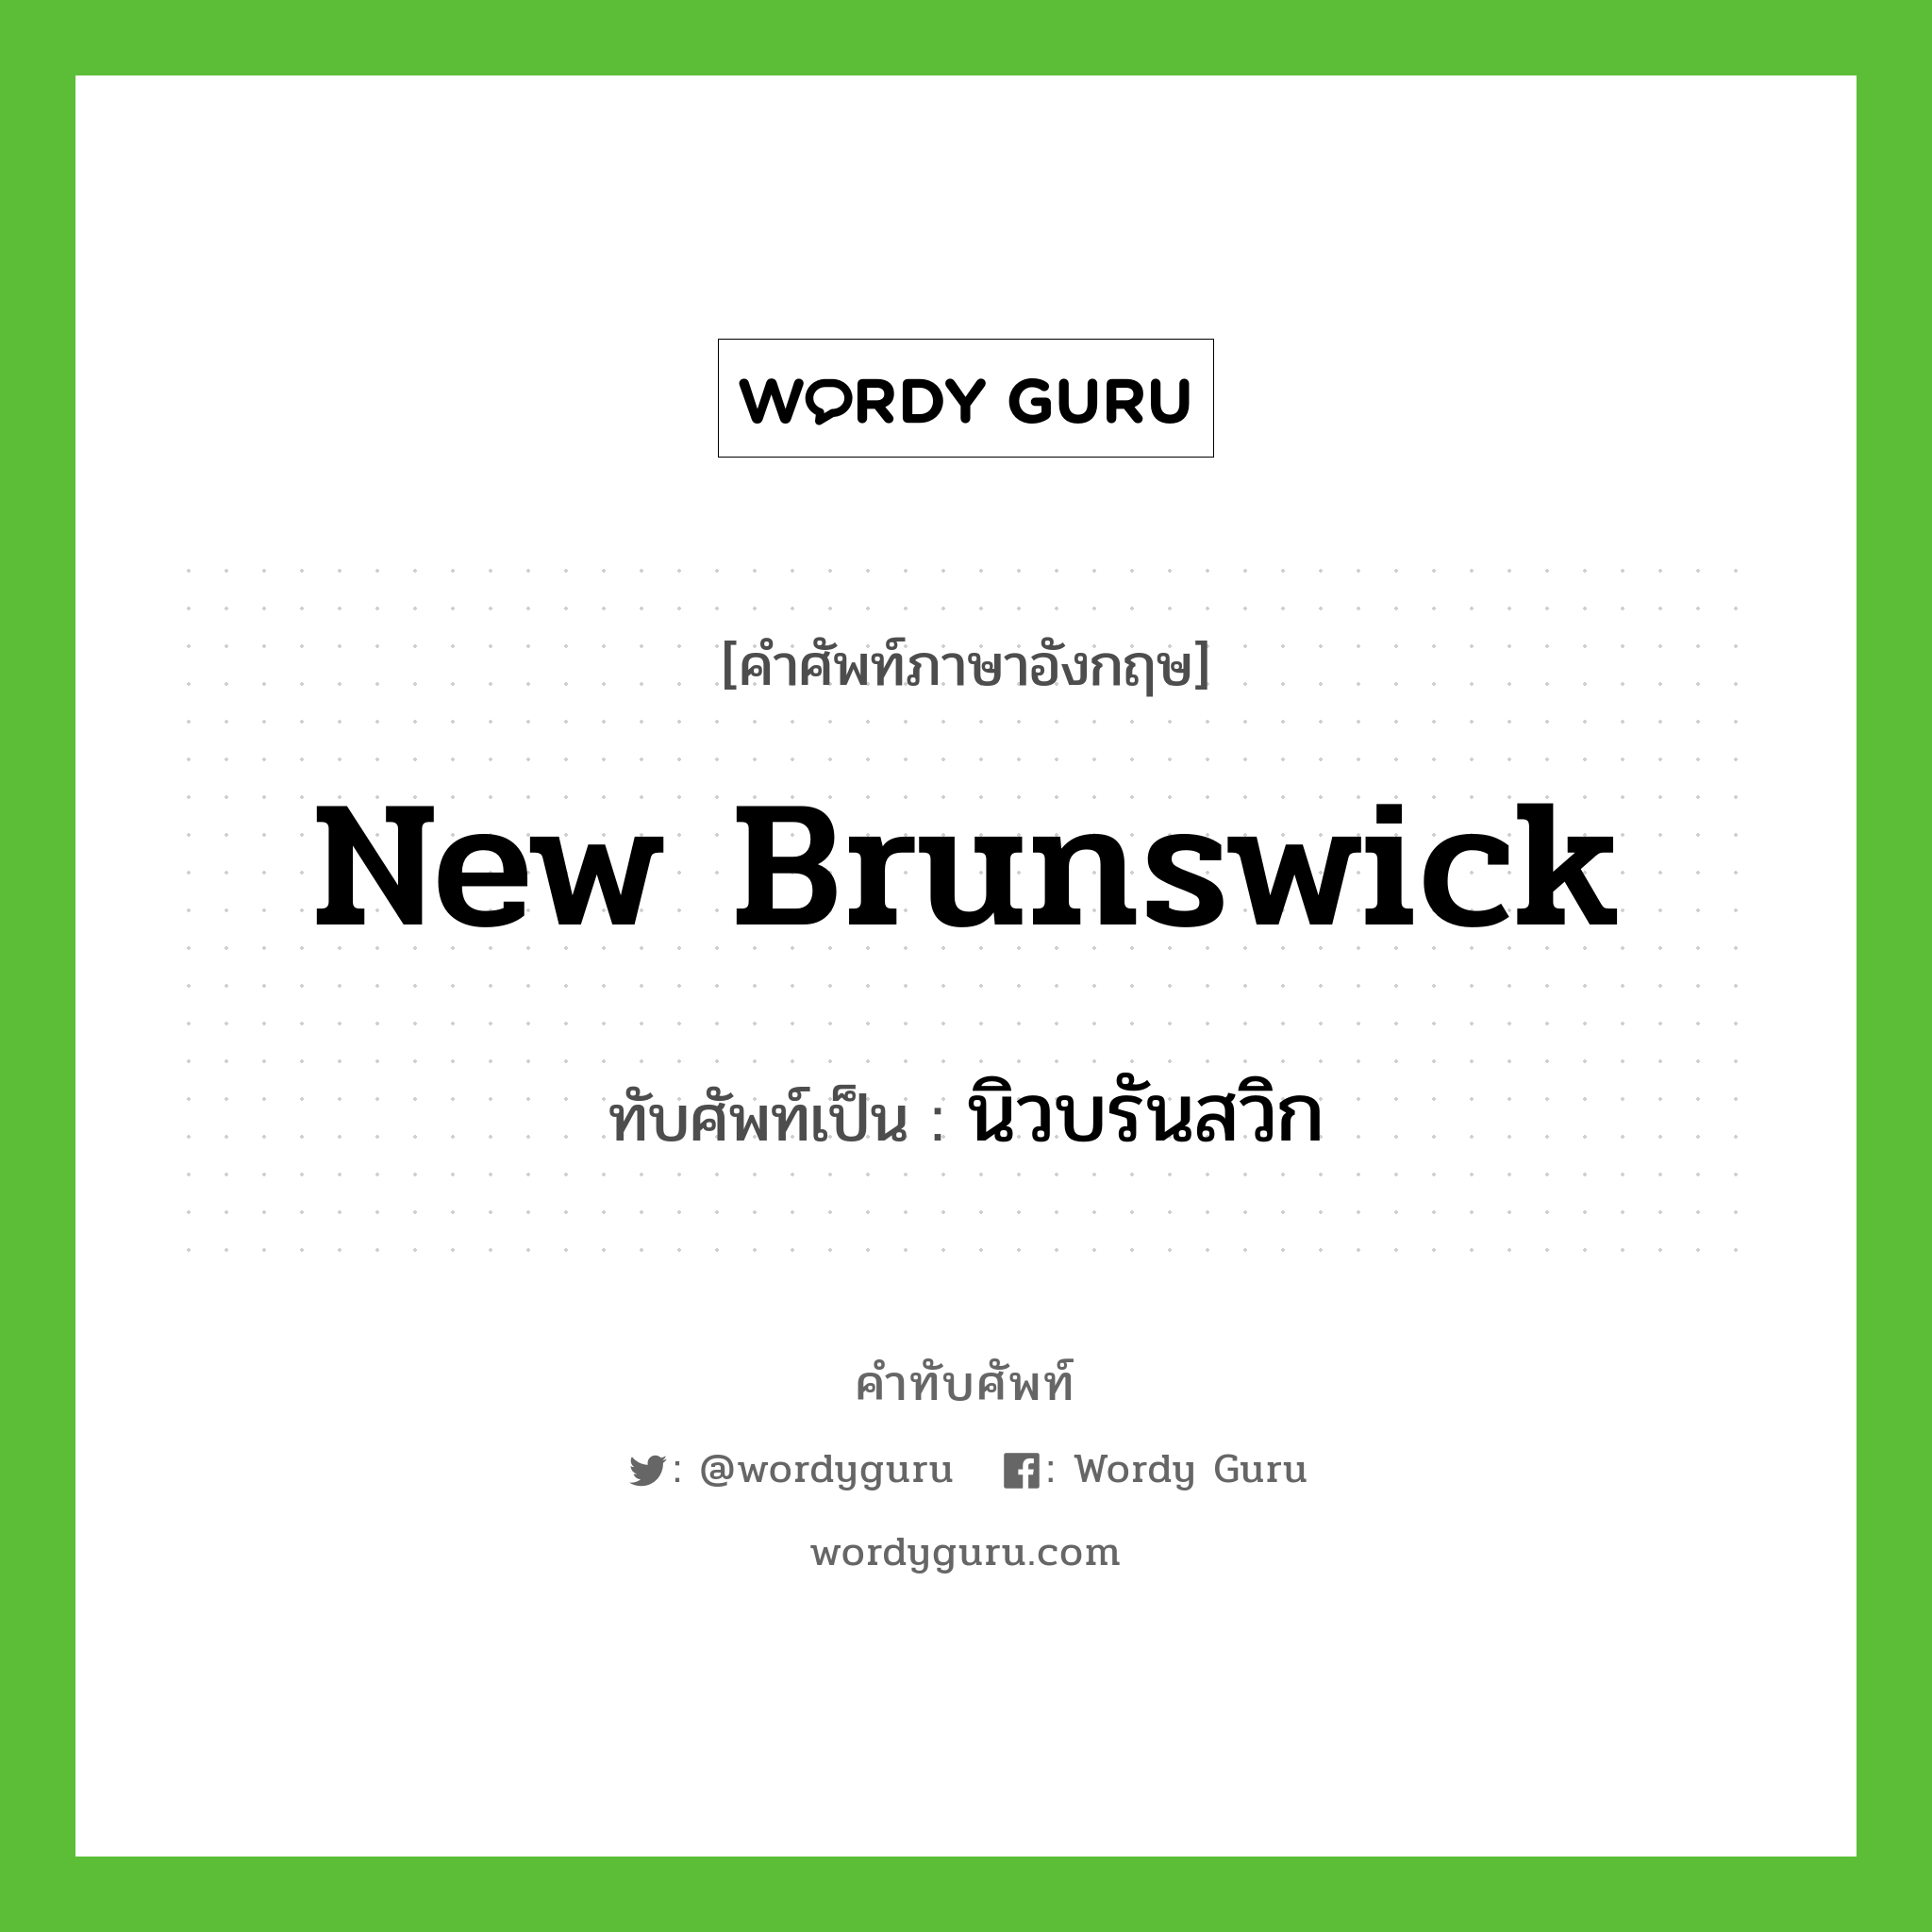 New Brunswick เขียนเป็นคำไทยว่าอะไร?, คำศัพท์ภาษาอังกฤษ New Brunswick ทับศัพท์เป็น นิวบรันสวิก